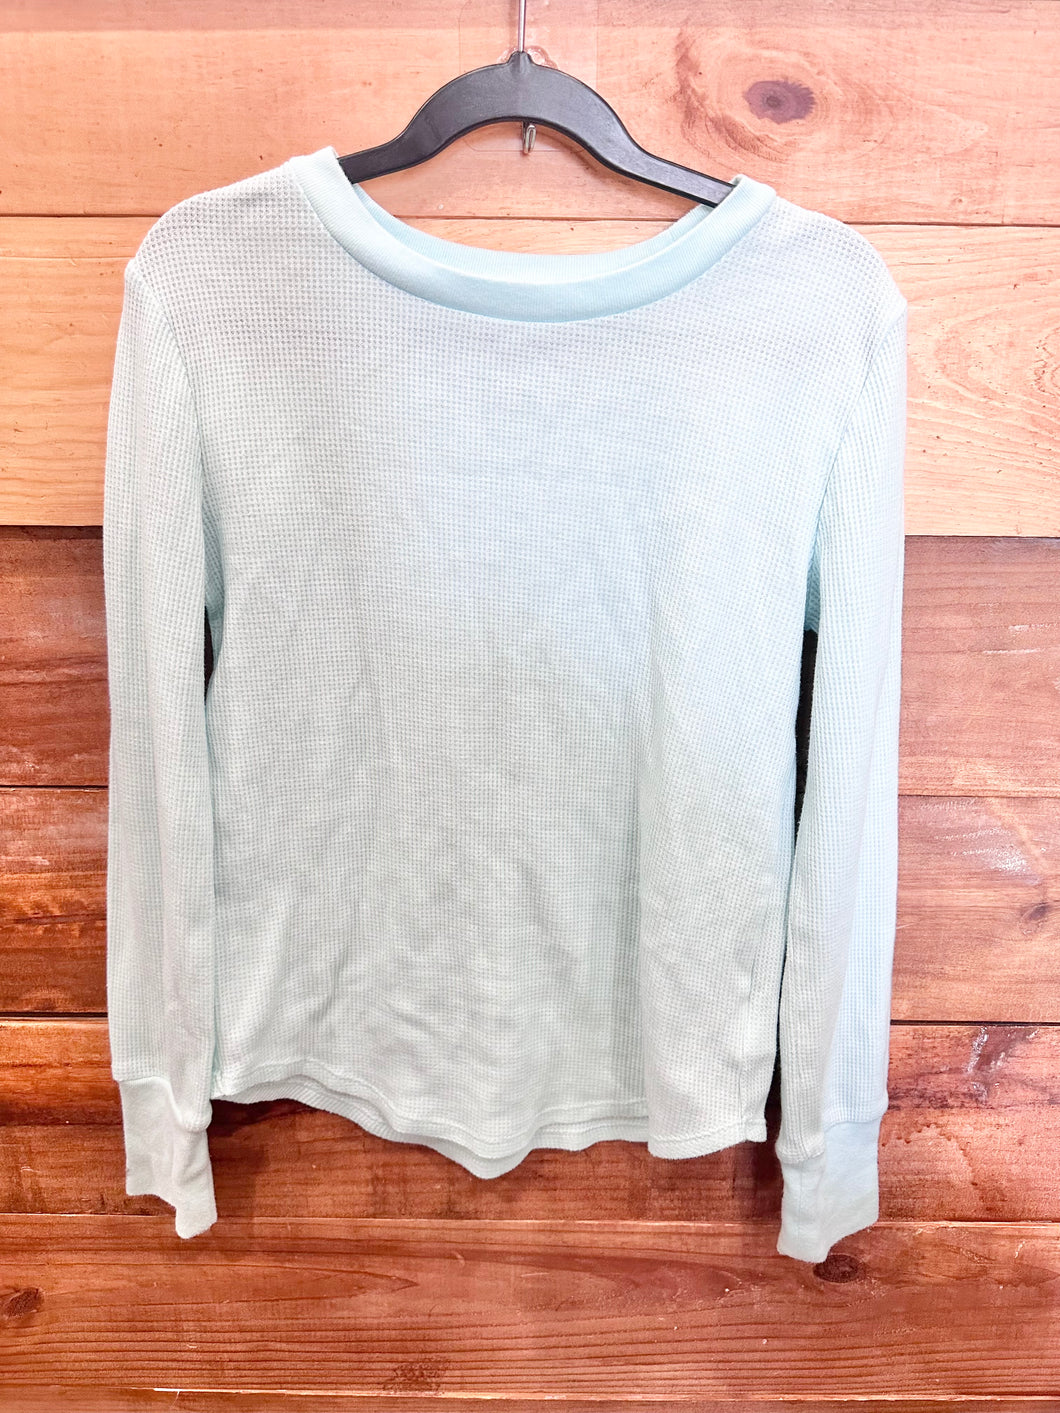 Gap Turquoise Shirt Size 10-12